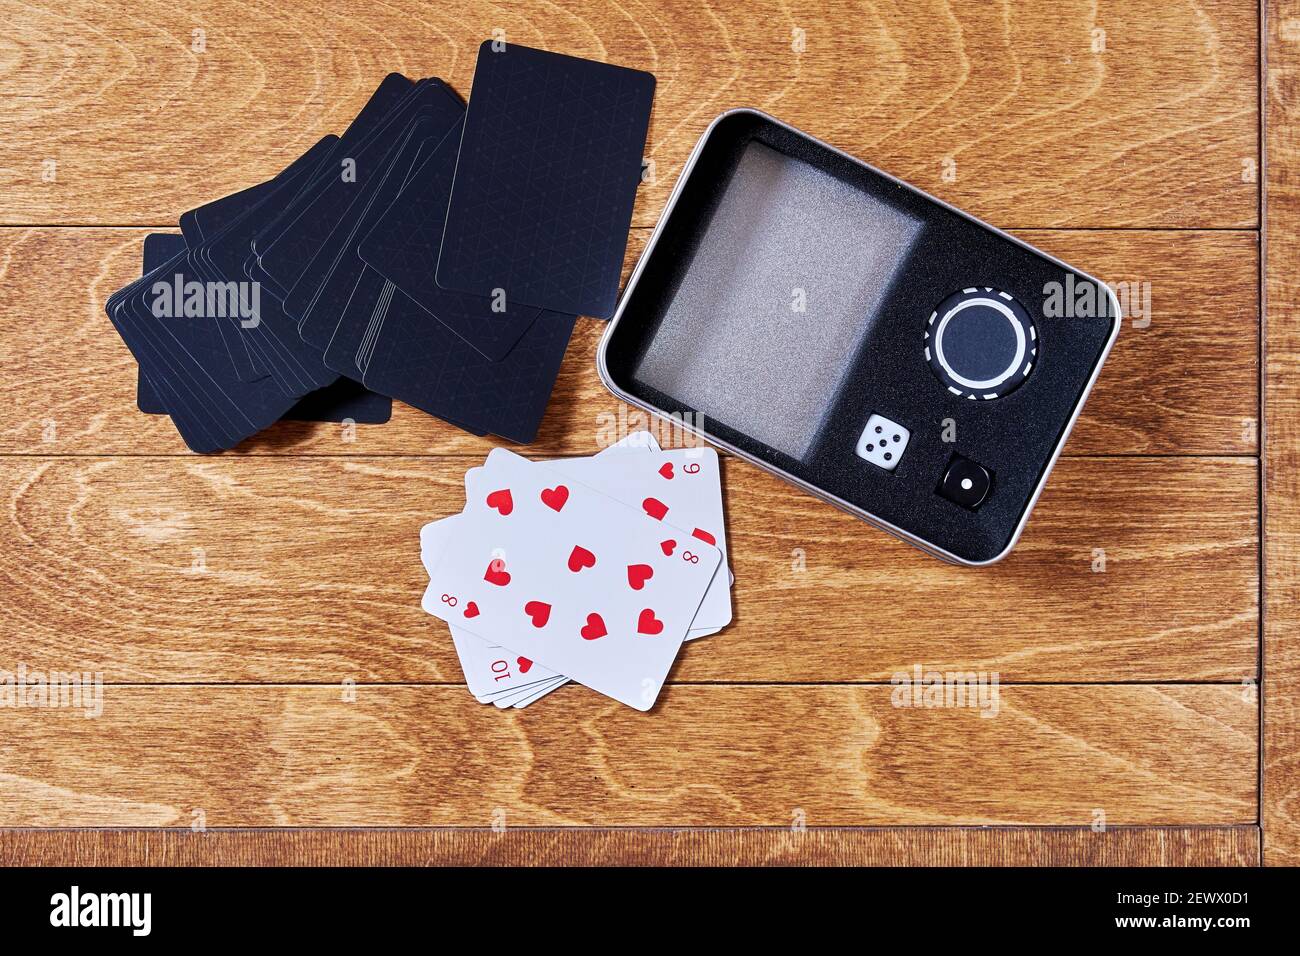 Caisse de poker avec cartes à jouer, dés et jetons sur la surface en bois. Activités de loisirs et jeux d'argent Banque D'Images